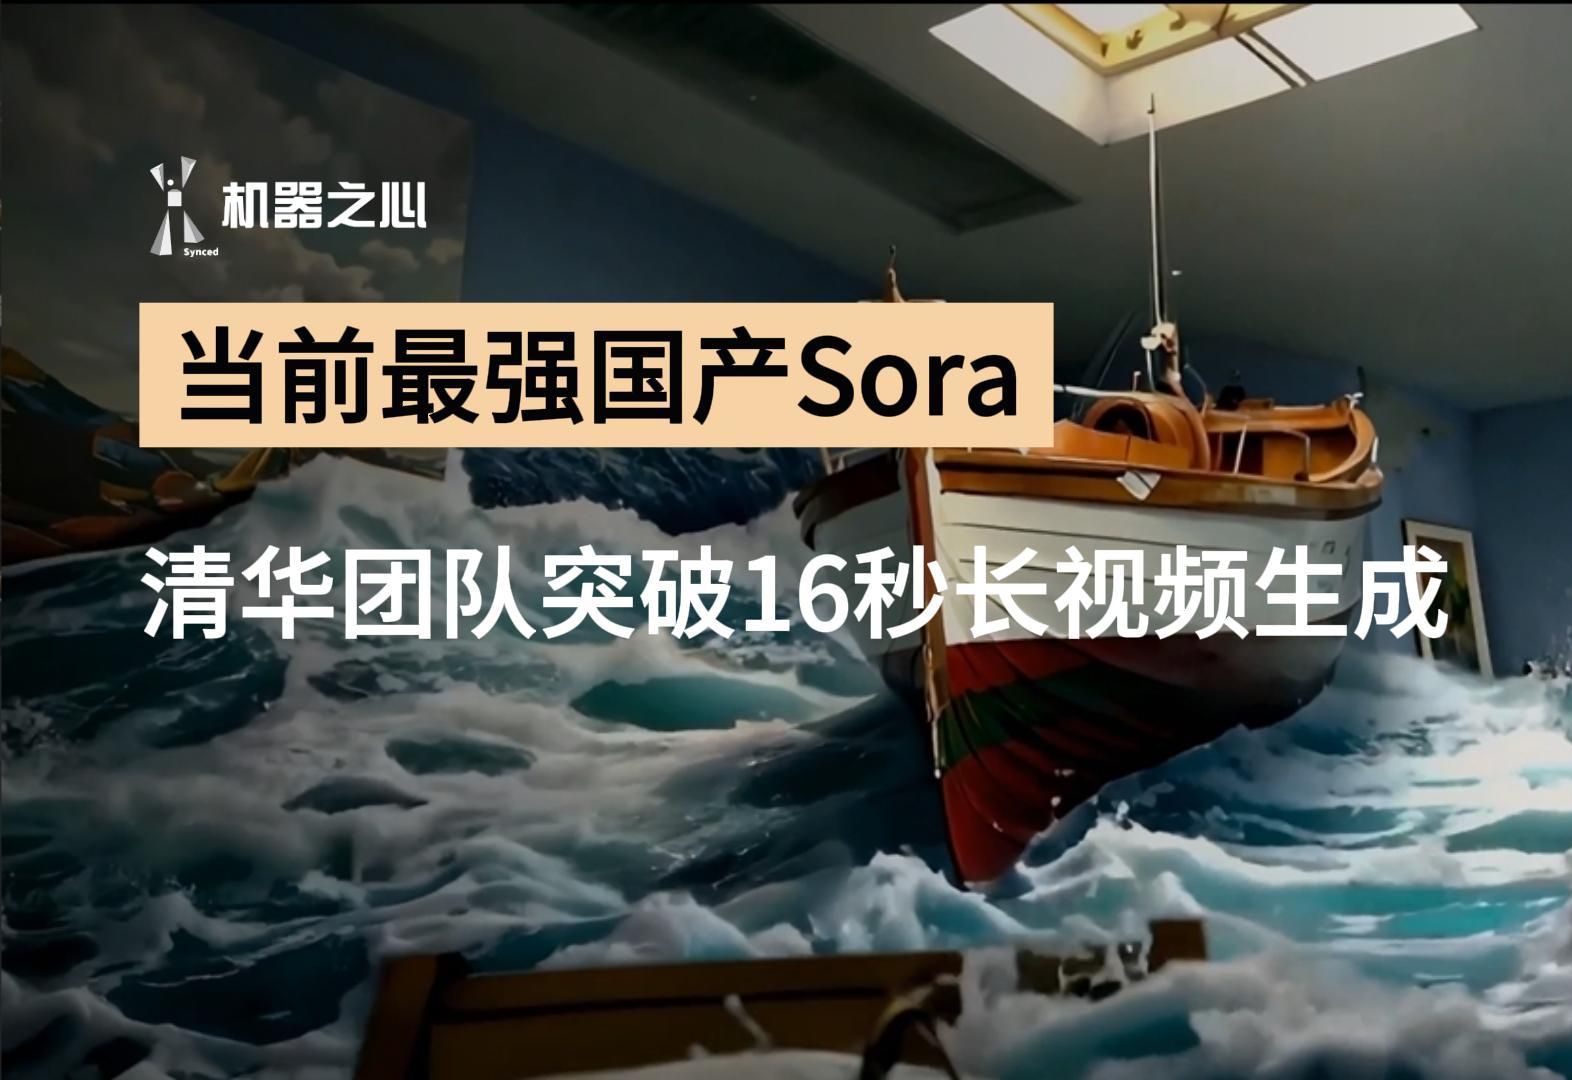 当前最强国产Sora！清华团队突破16秒长视频生成